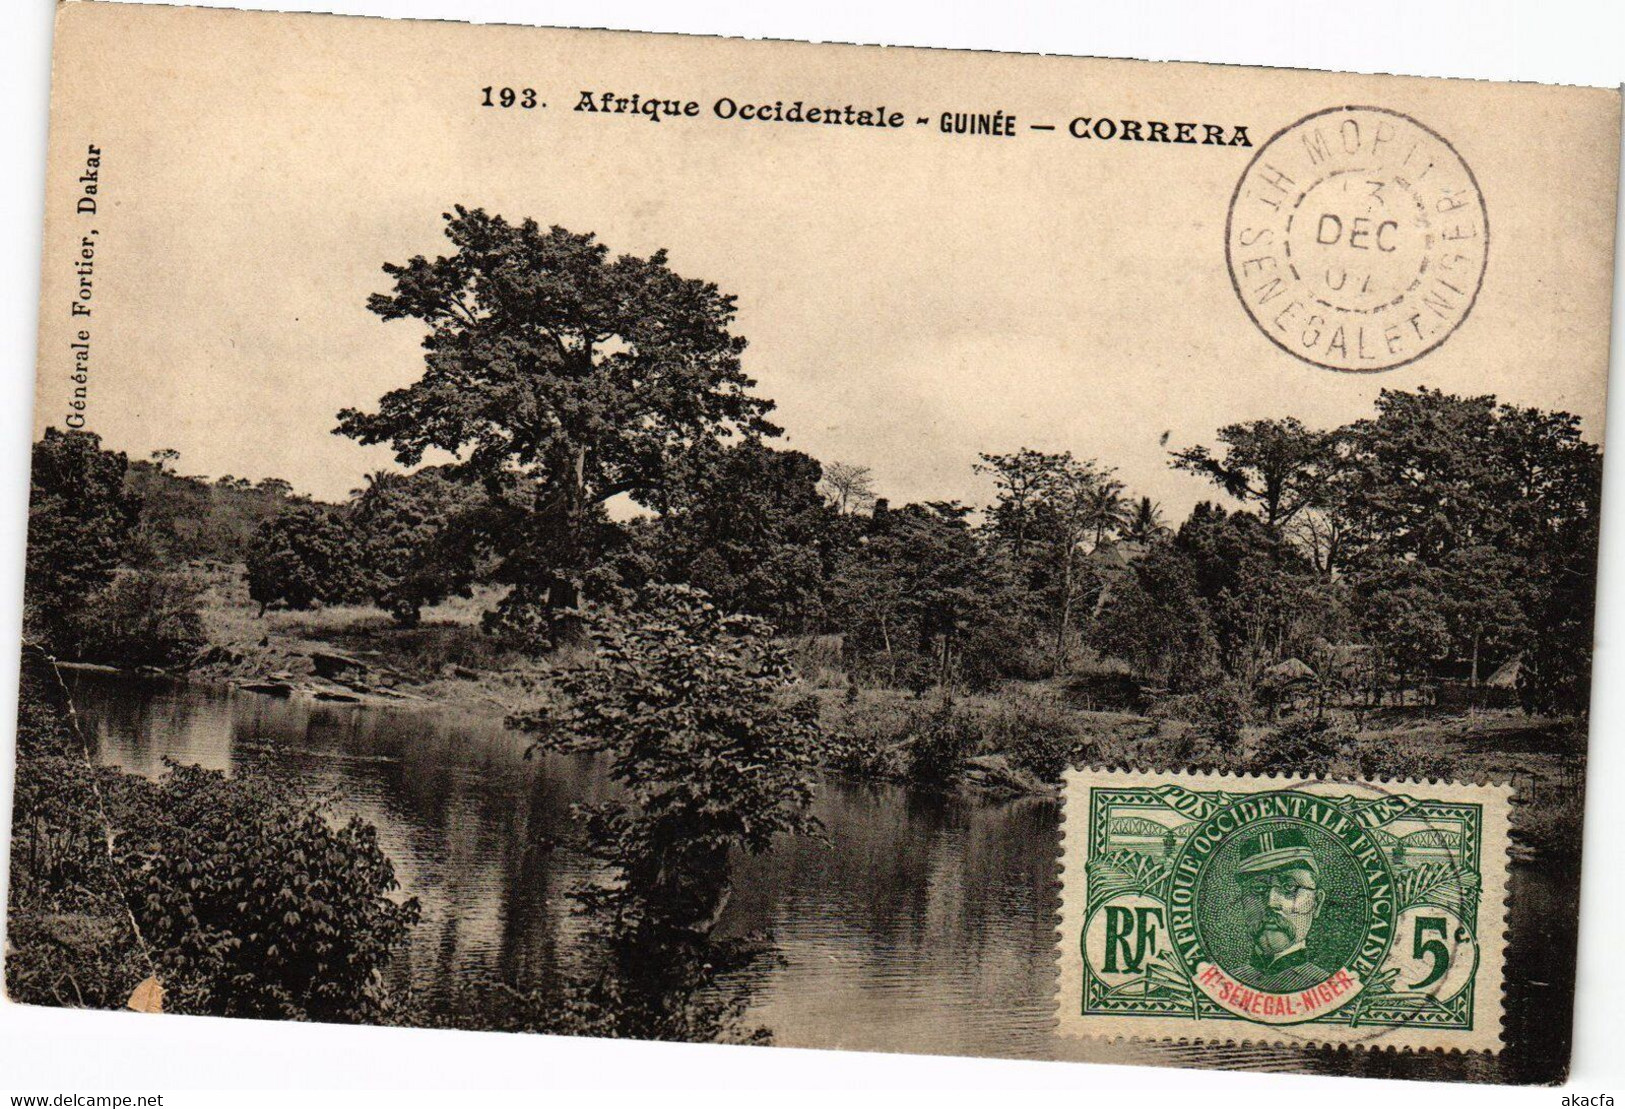 PC ED. FORTIER CORRERA GRENCH GUINEA (a29141) - Guinée Française